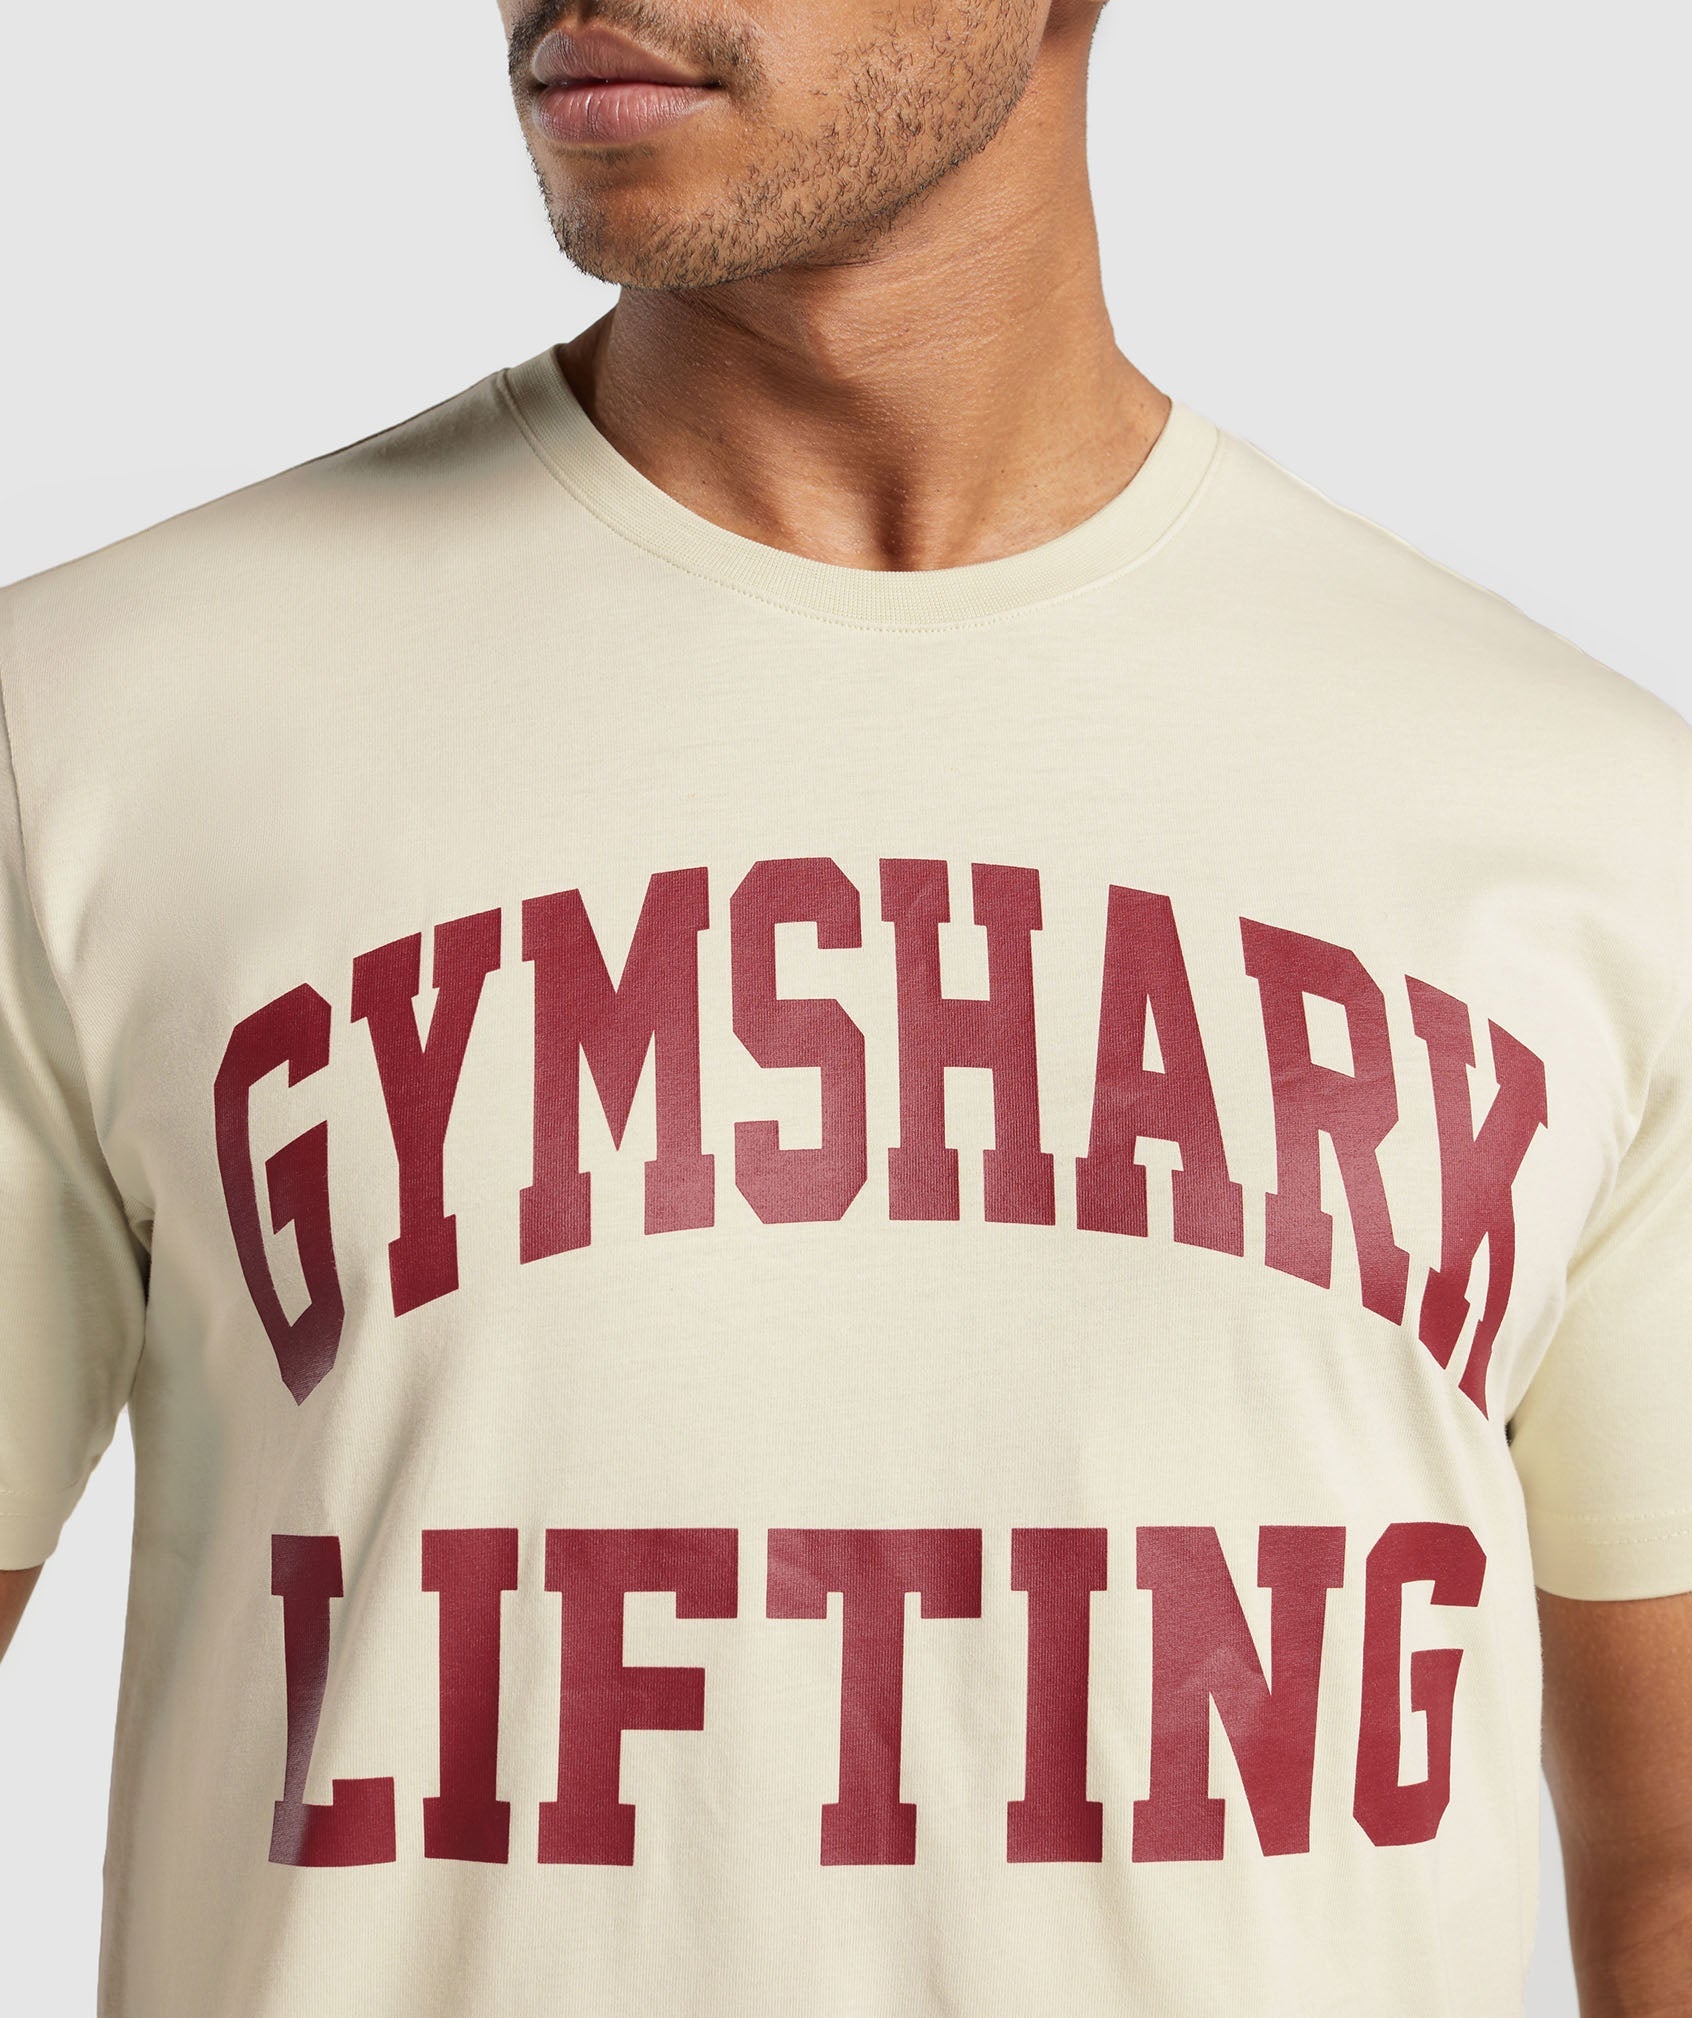 Gymshark Lifting Club T-Shirt - Ecru White